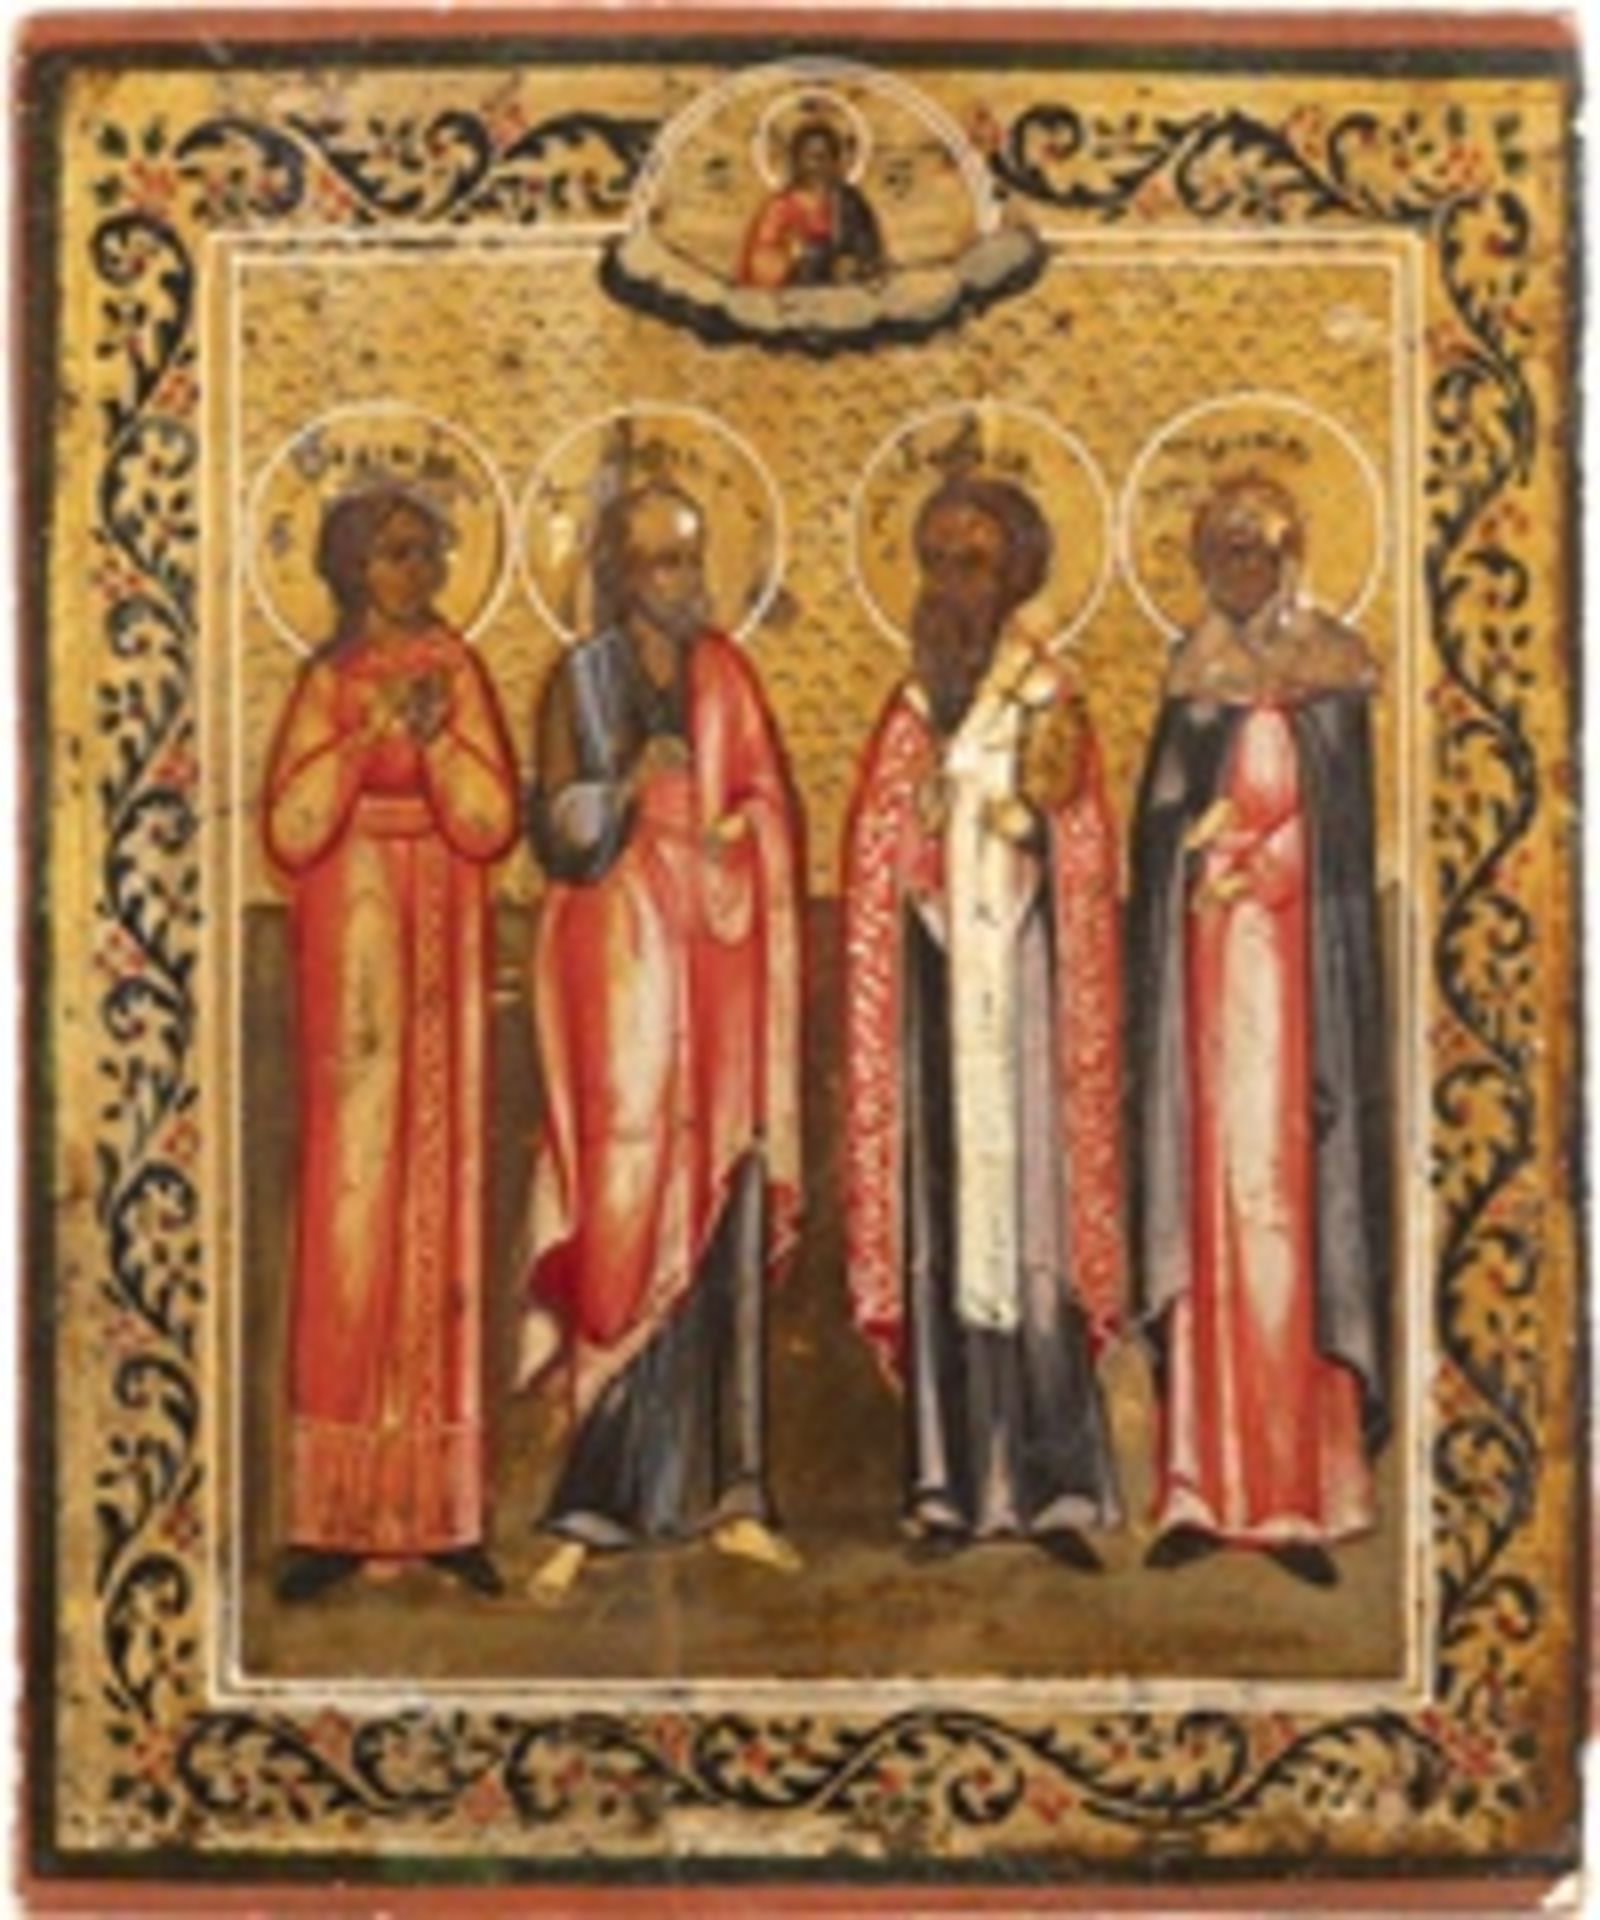 IKONE MIT DEN HEILIGEN NADESCHDA, DEM APOSTEL PAULUS, BASIL DEM GROSSEN UND PELAGIA - Image 2 of 3